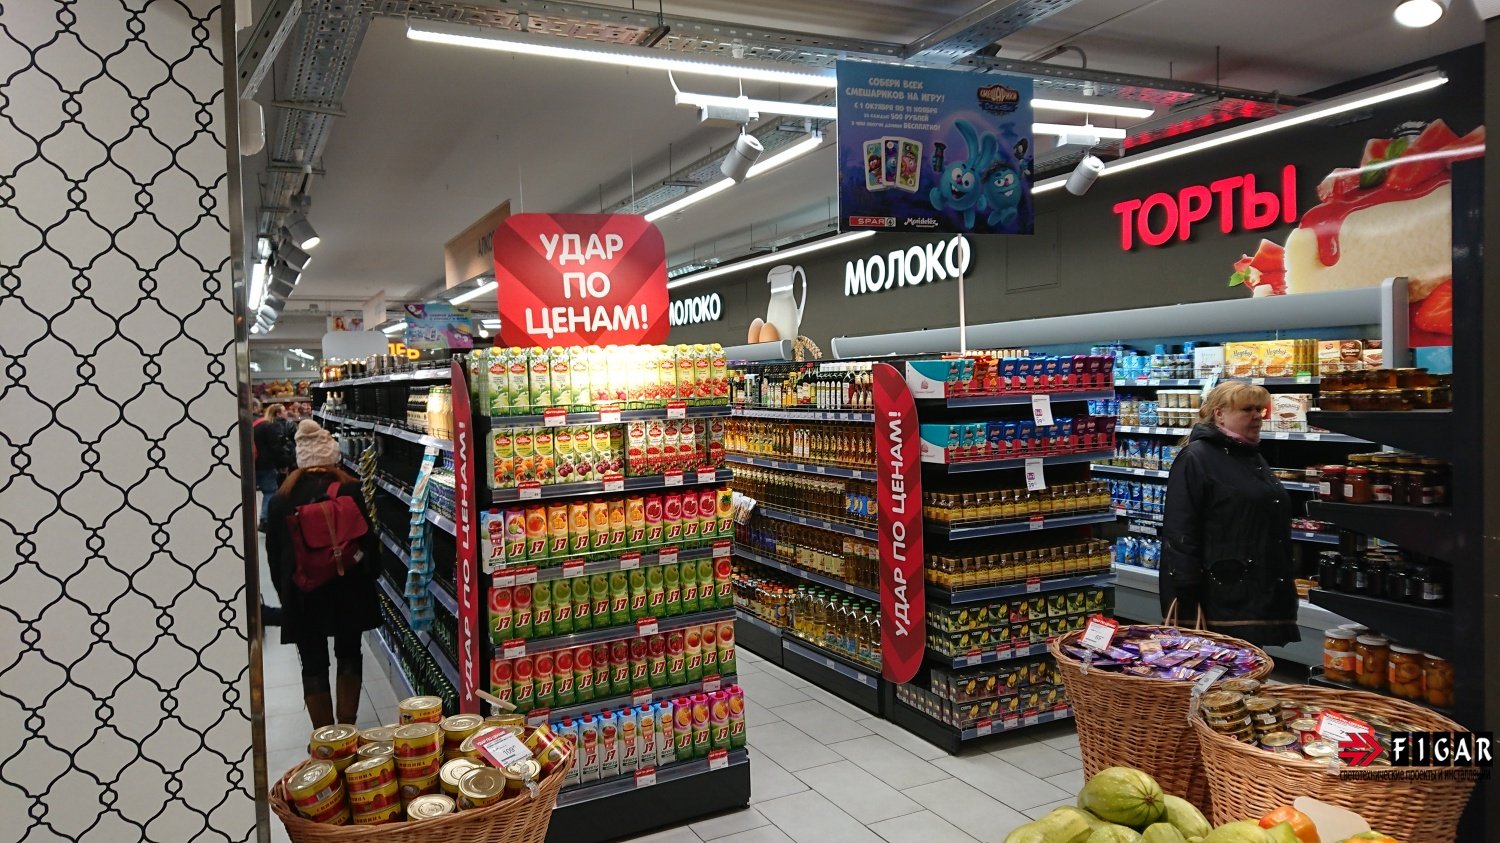 Освещение в супермаркете "EUROSPAR"